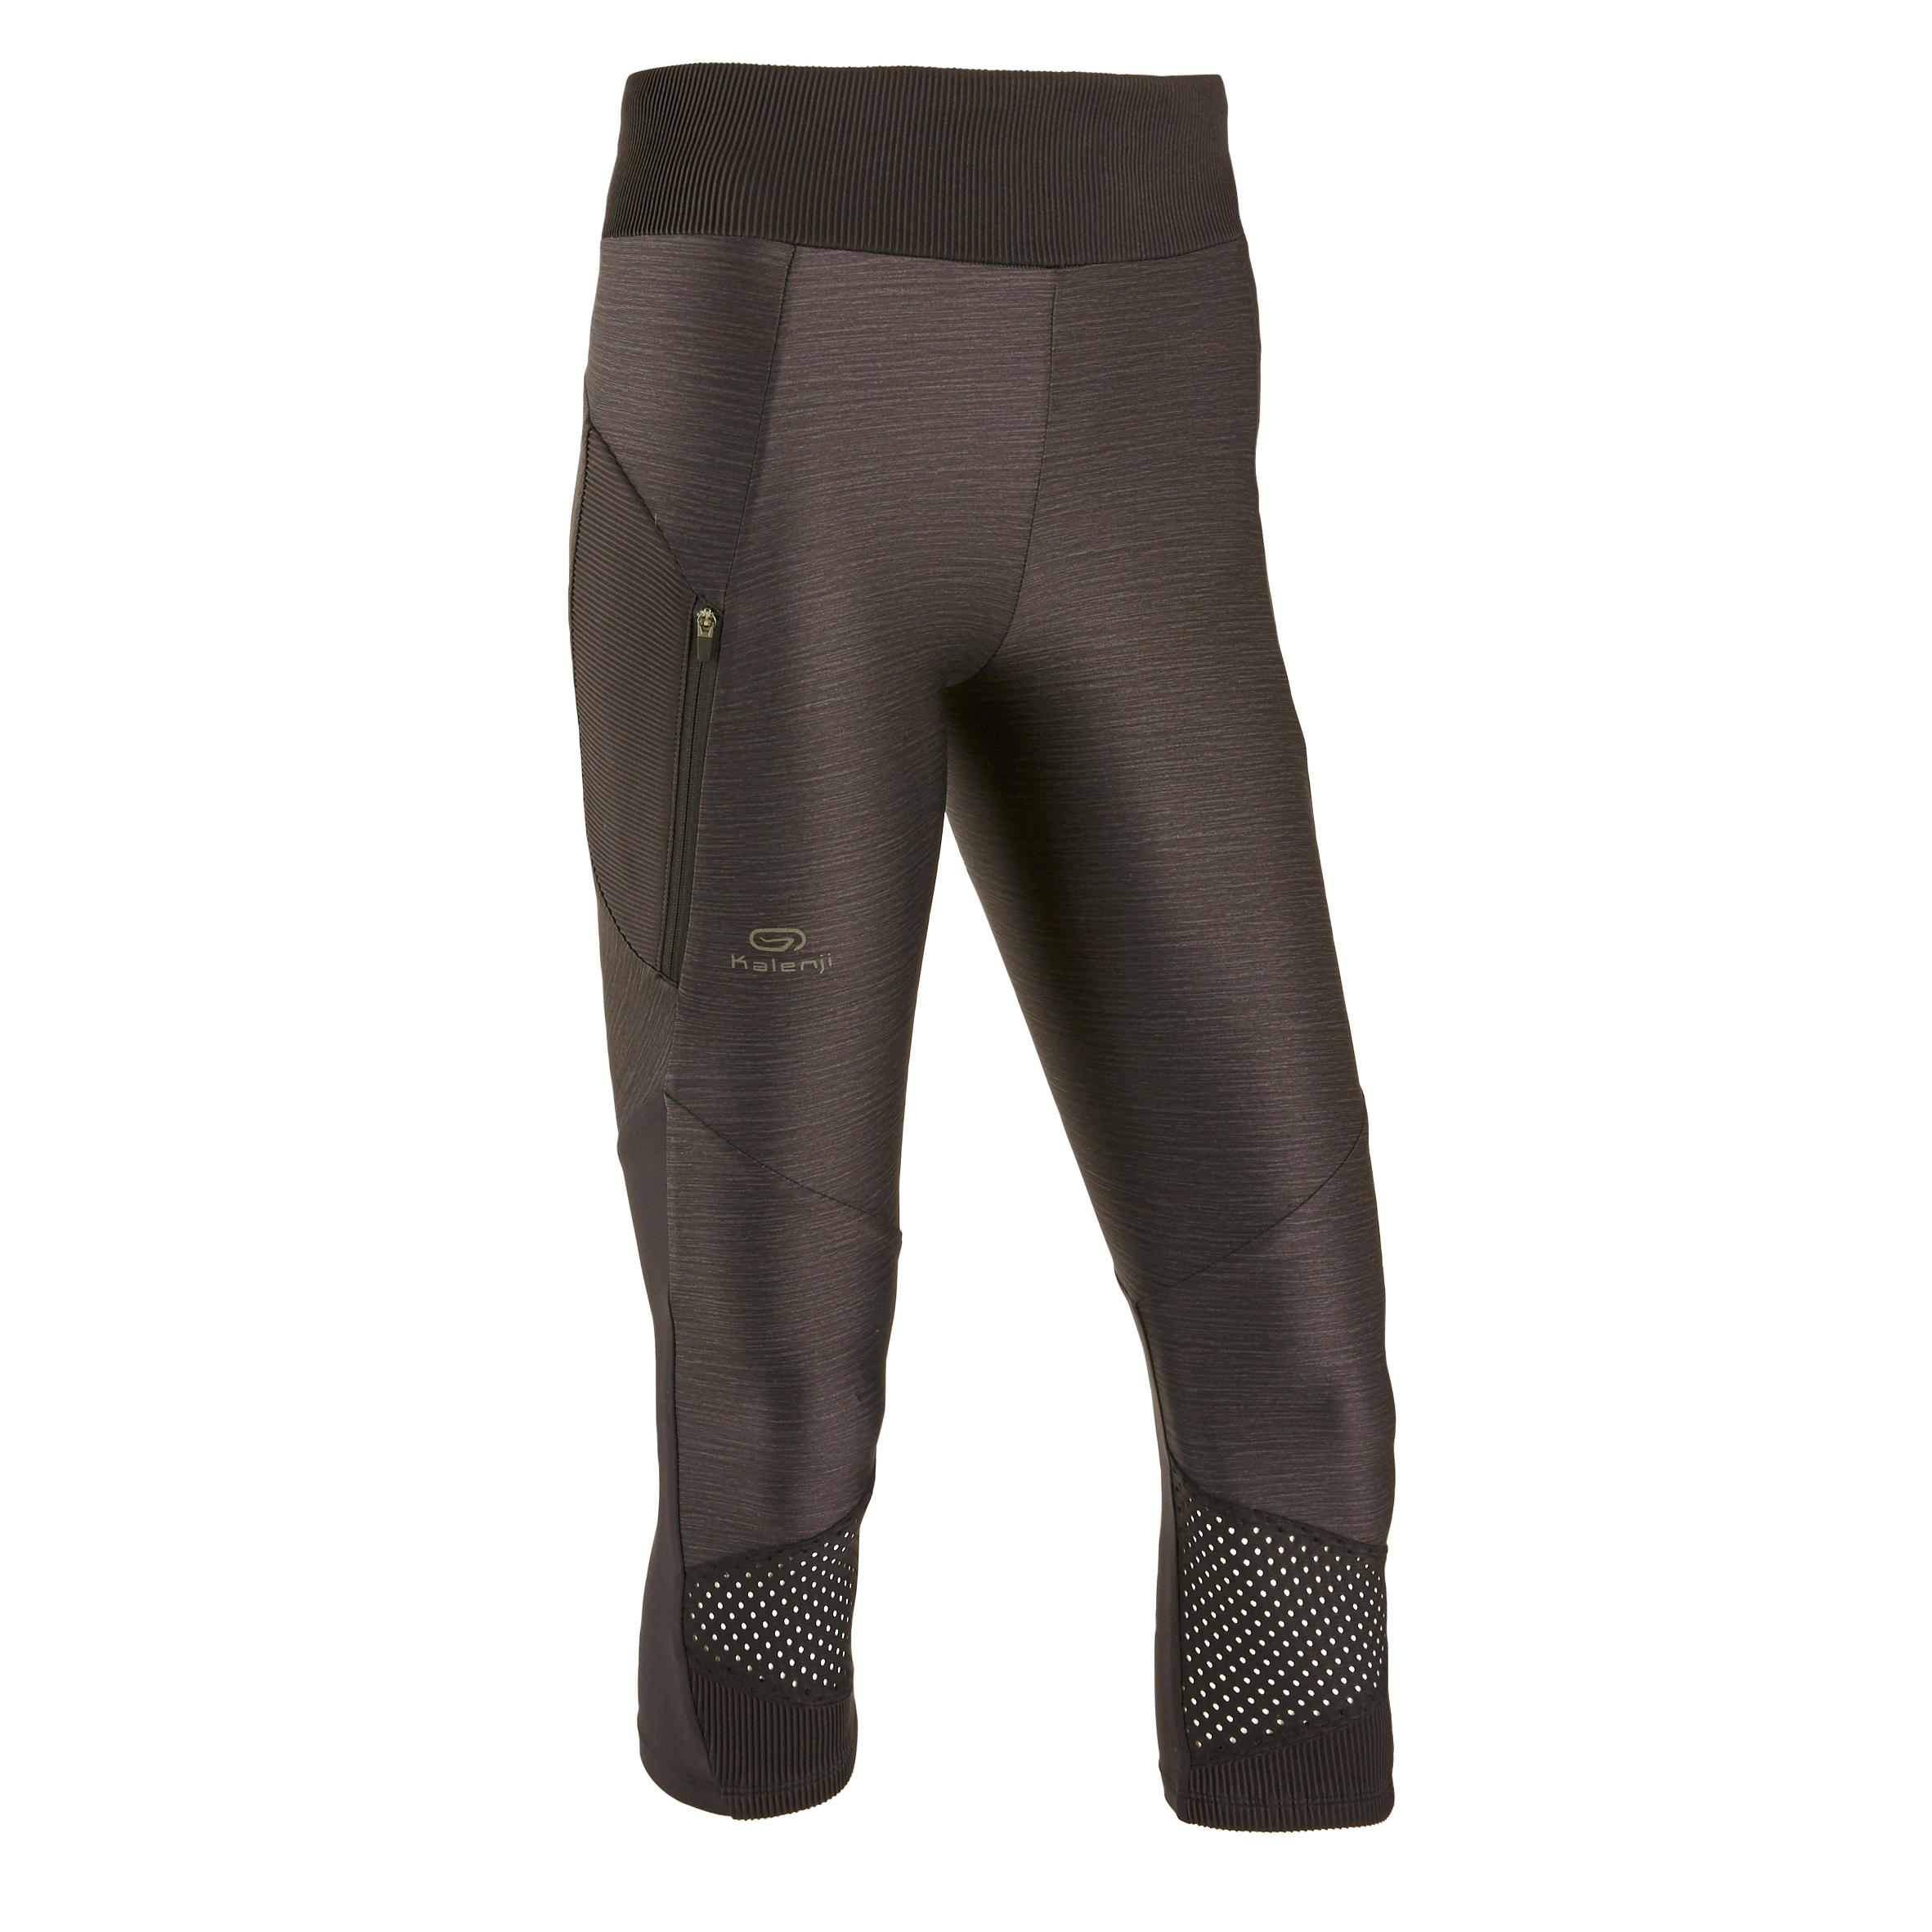 Women's breathable short running leggings Dry+ Feel - black 30/30